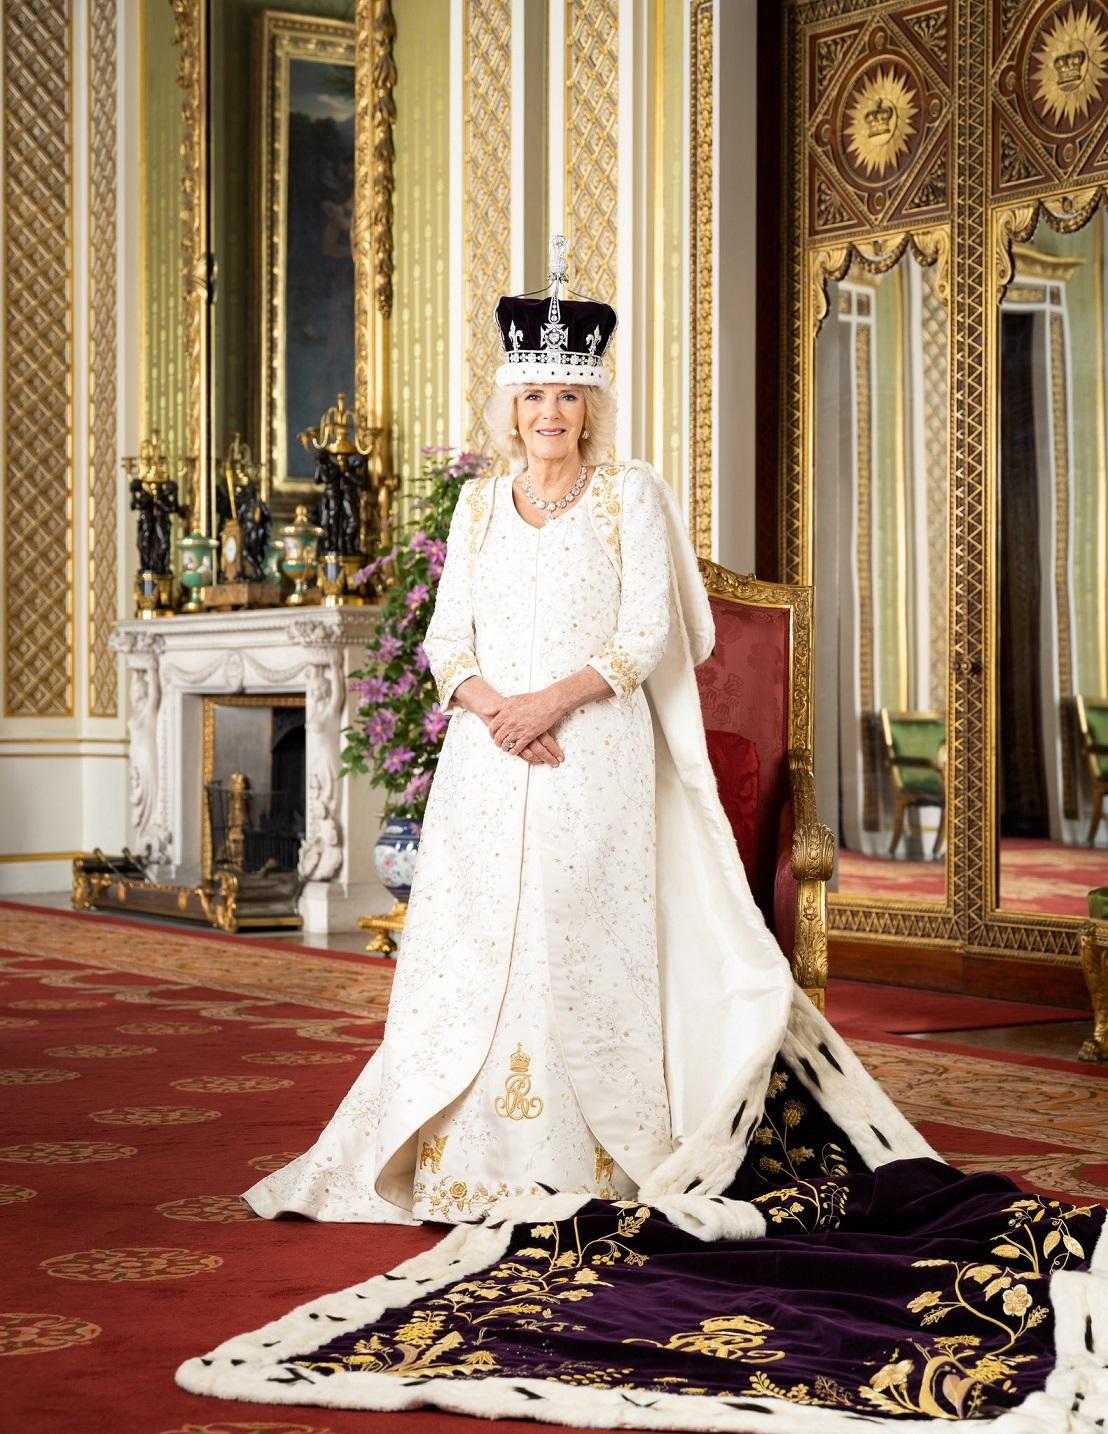 Fotografiu uverejnil oficiálny účet kráľovskej rodiny na sociálnej sieti Twitter